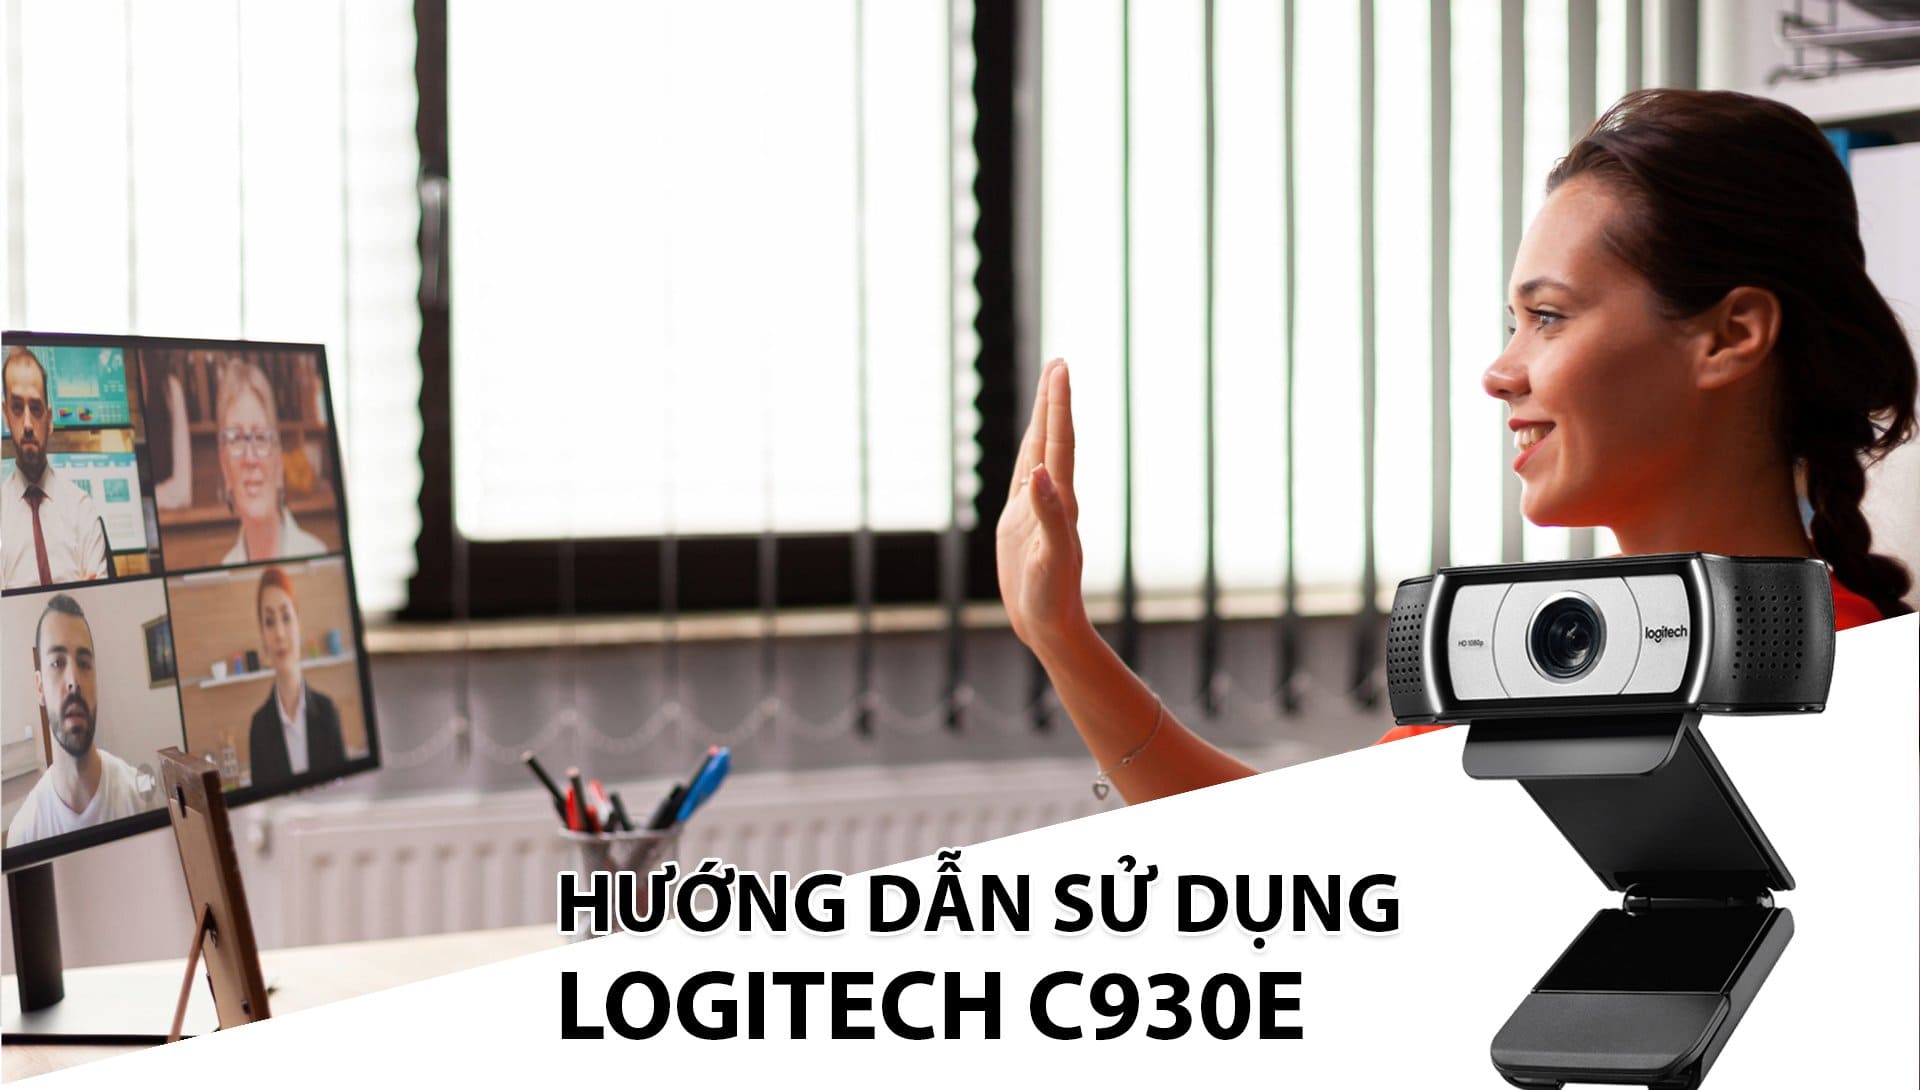 Hướng dẫn lắp đặt và sử dụng hệ thống họp trực tuyến Logitech C930e chi tiết nhất